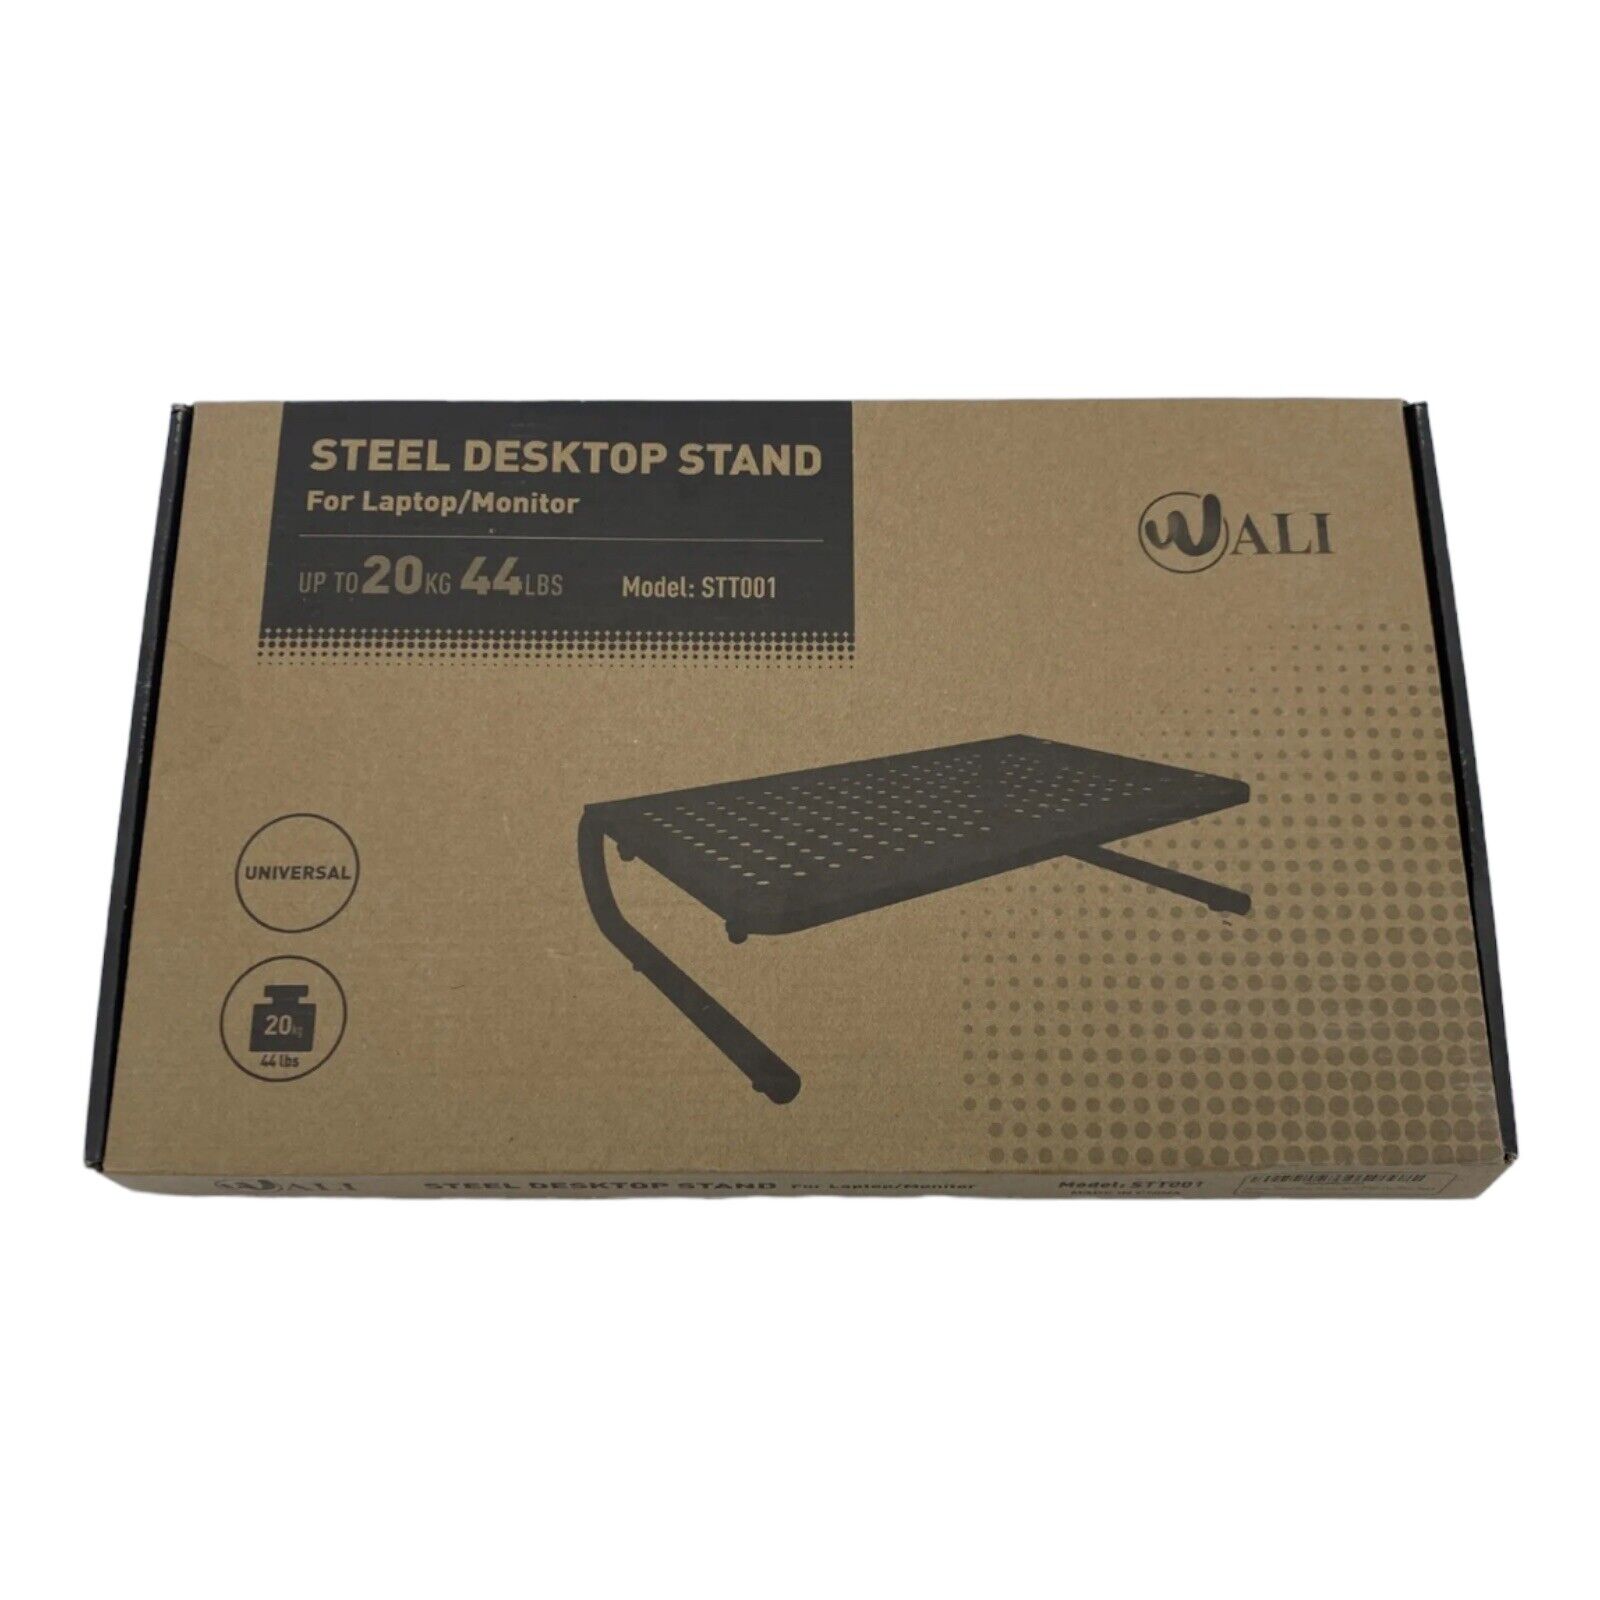 WALI Steel Desktop Stand For Laptop/Monitor Model STT001 4”H 14.5”W 9.5” D